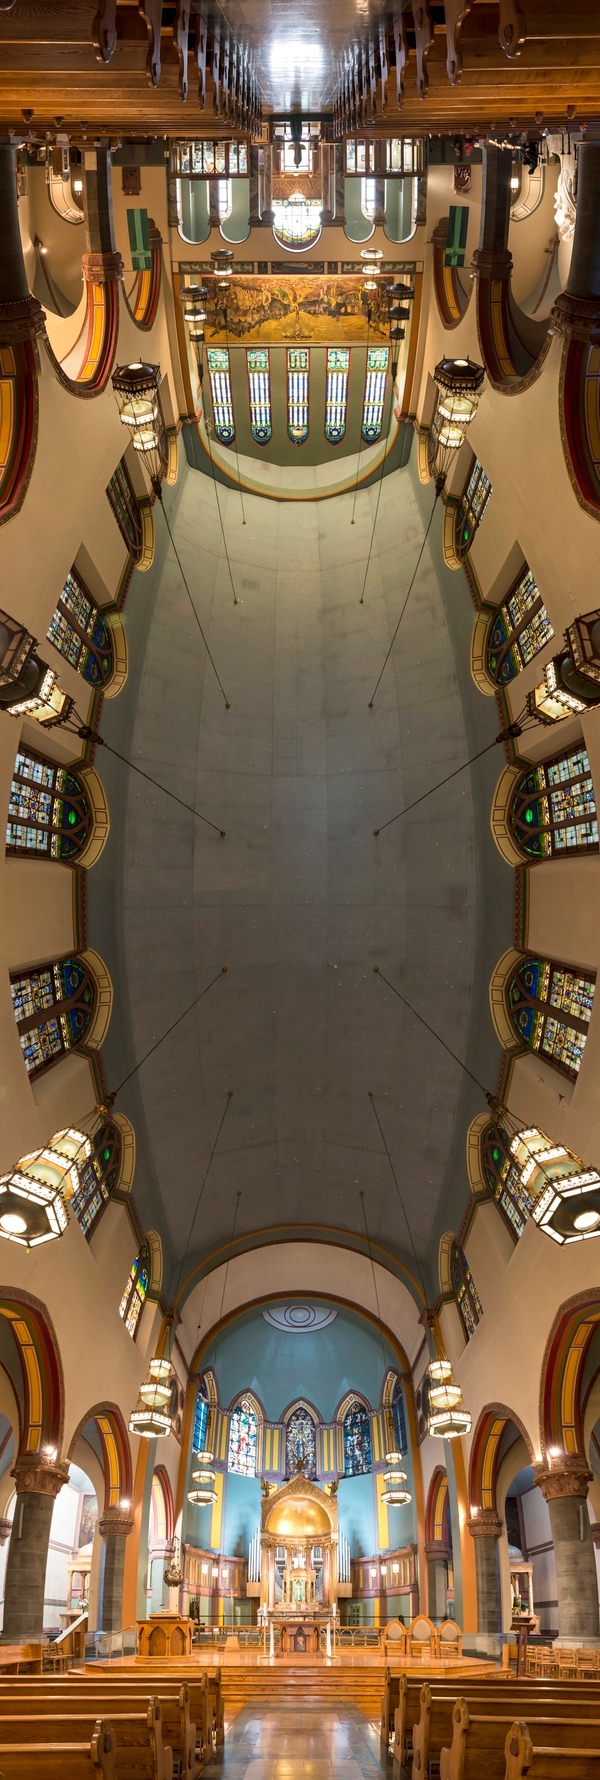 5. Фотография из серии вертикальных панорам храмов Нью-Йорка